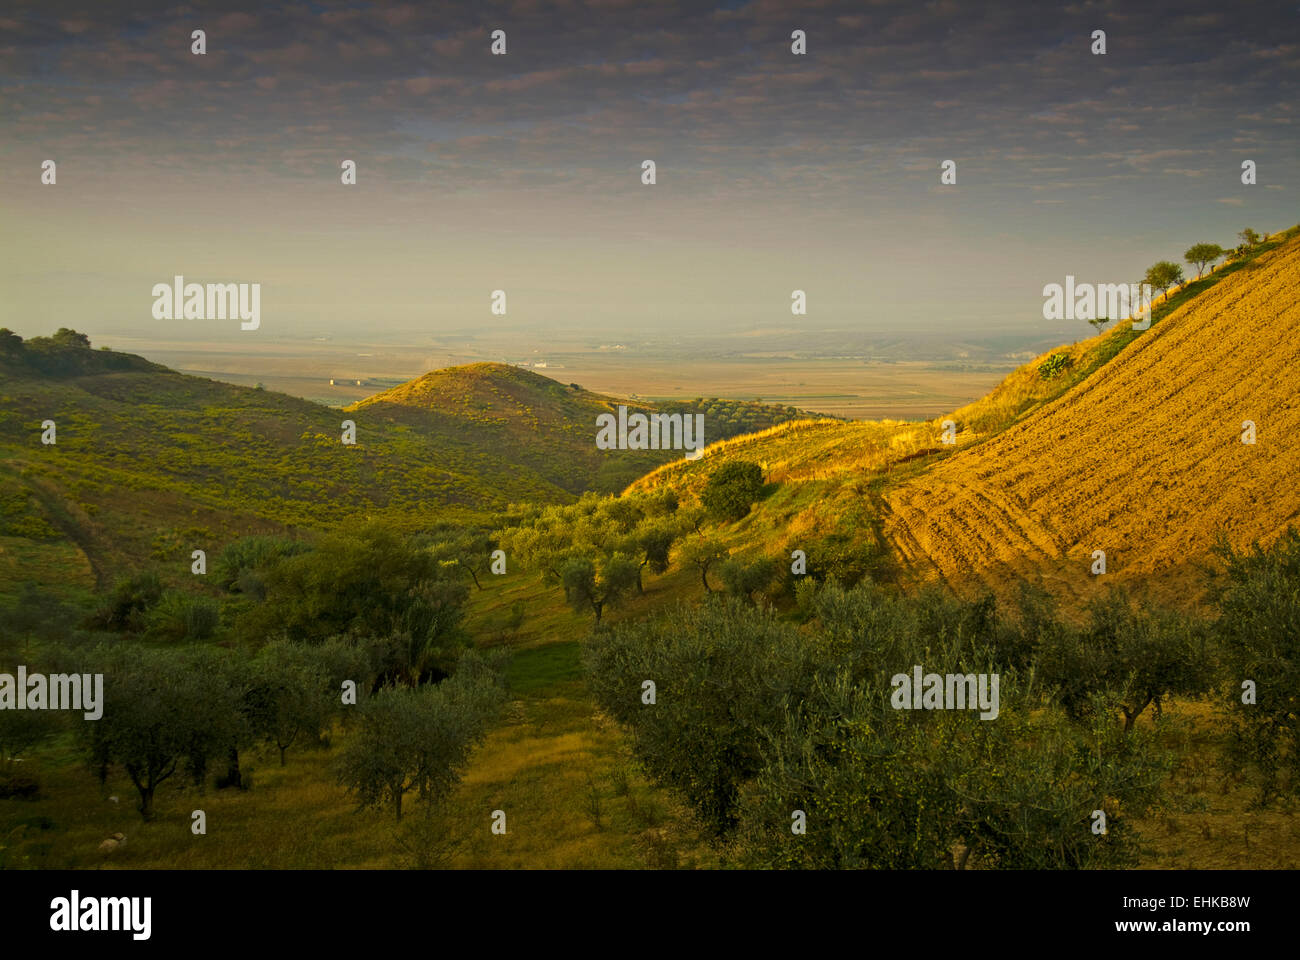 Olive groves, Gargano, Apulia, Italy Stock Photo